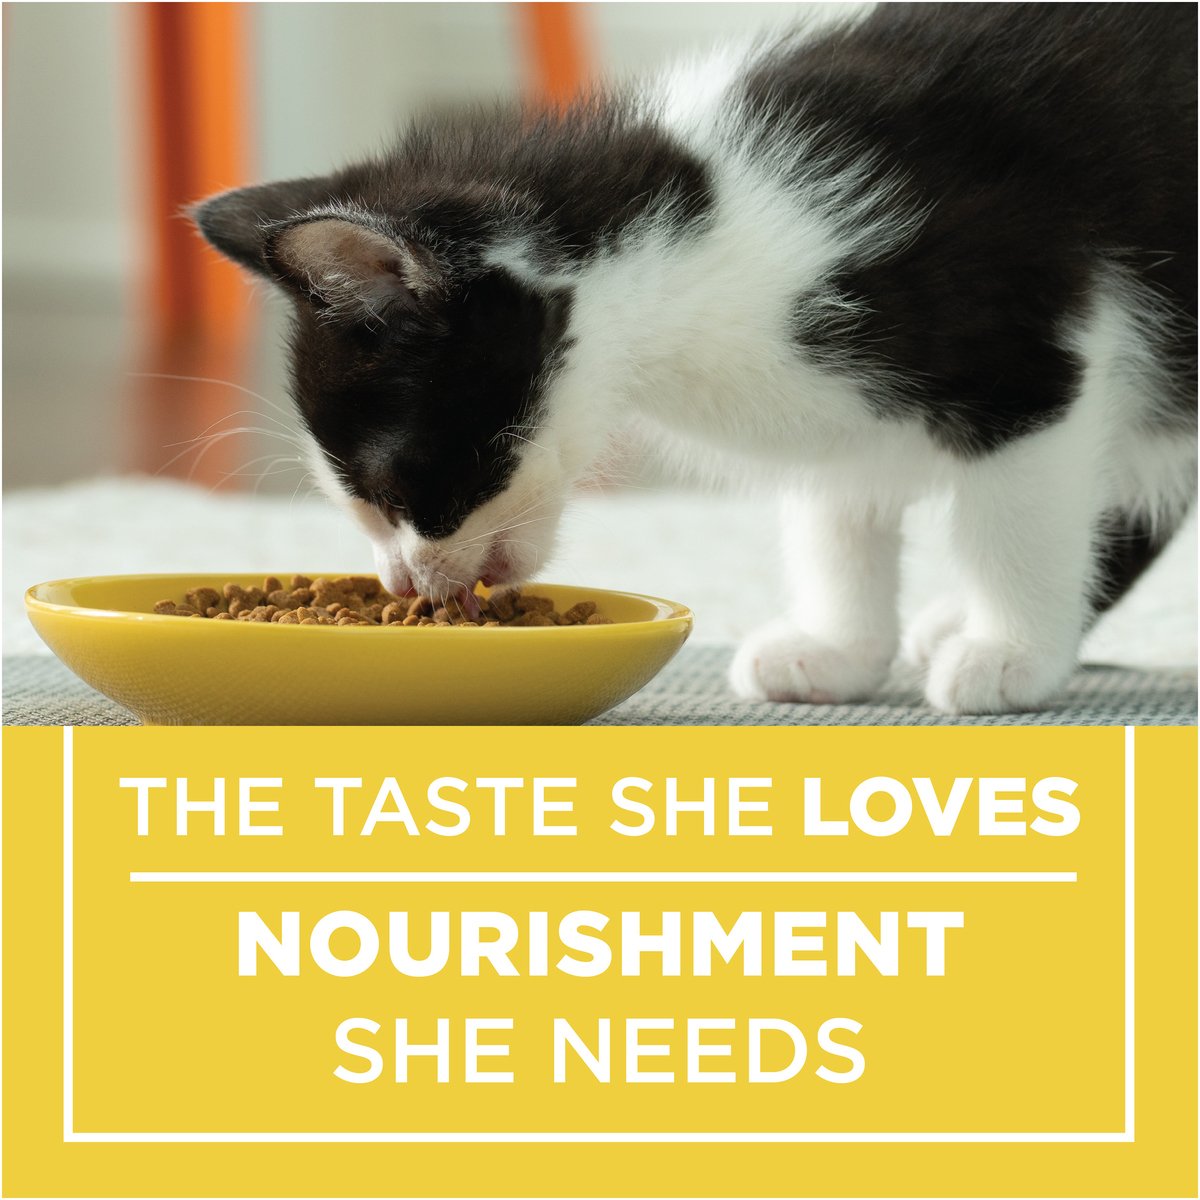 Purina Kitten Chow Nurture Cat Food 510 g